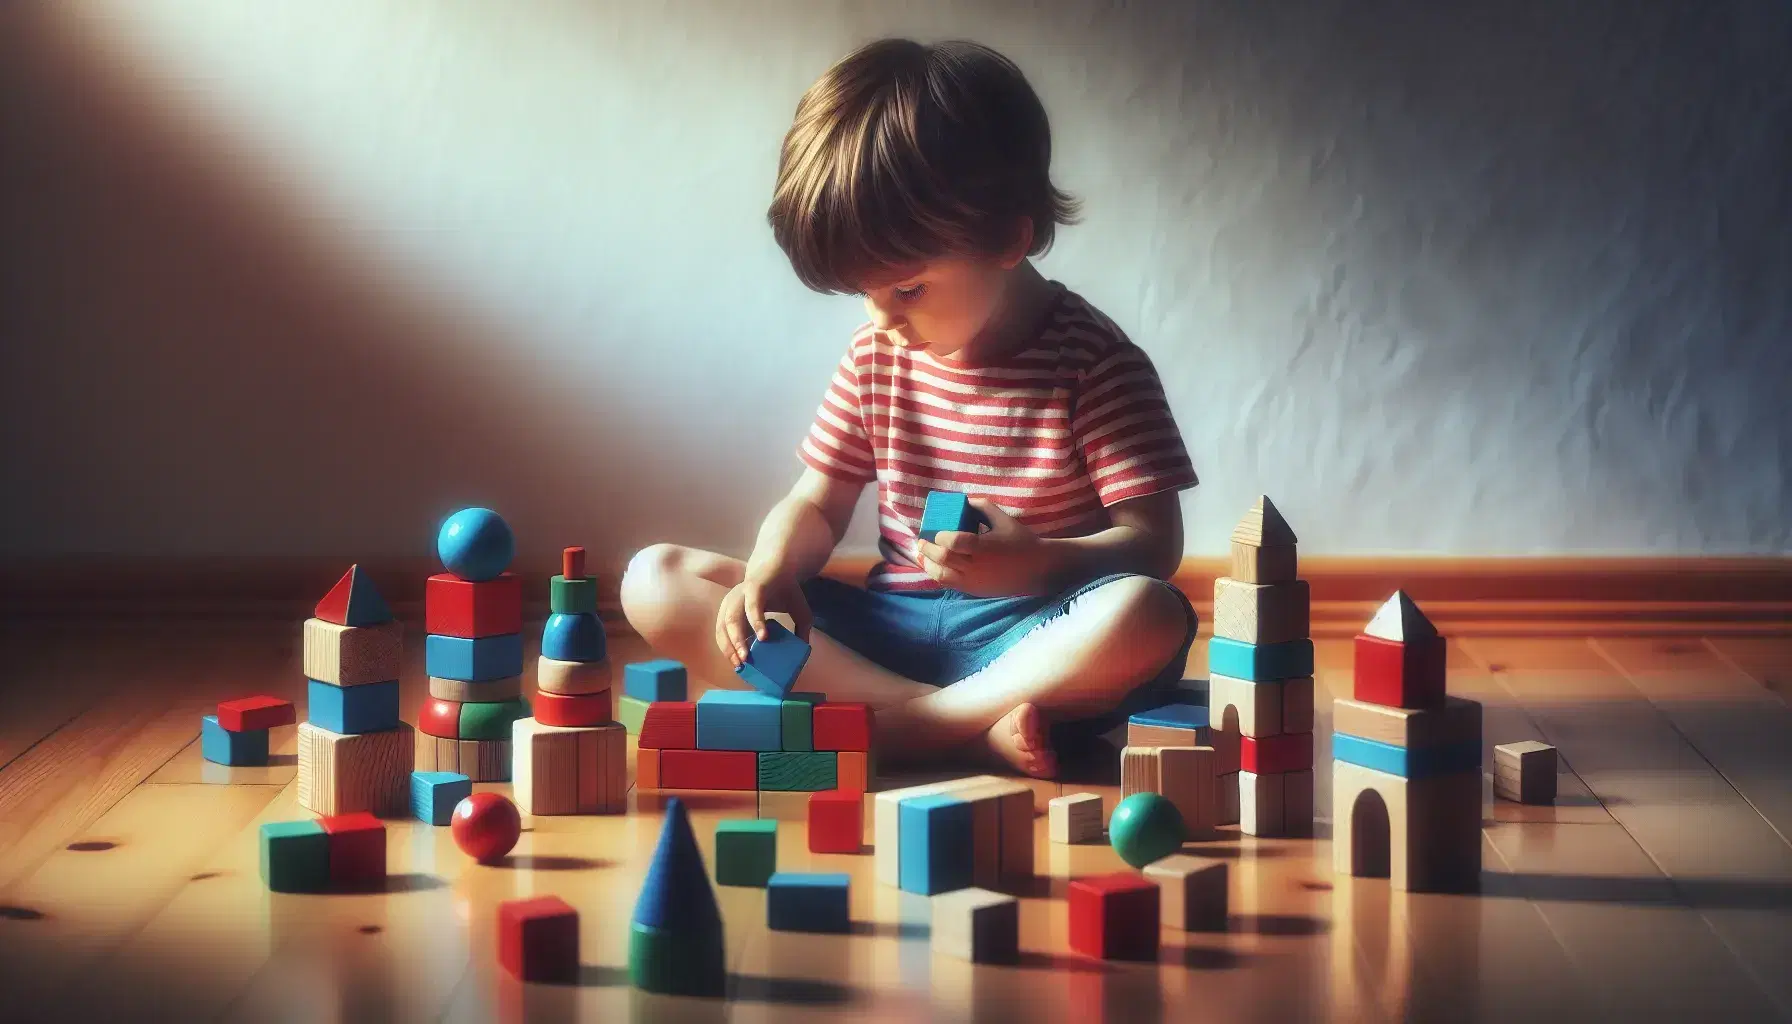 Bambino concentrato gioca con blocchi di legno colorati su pavimento, indossando maglietta a righe e pantaloncini blu.